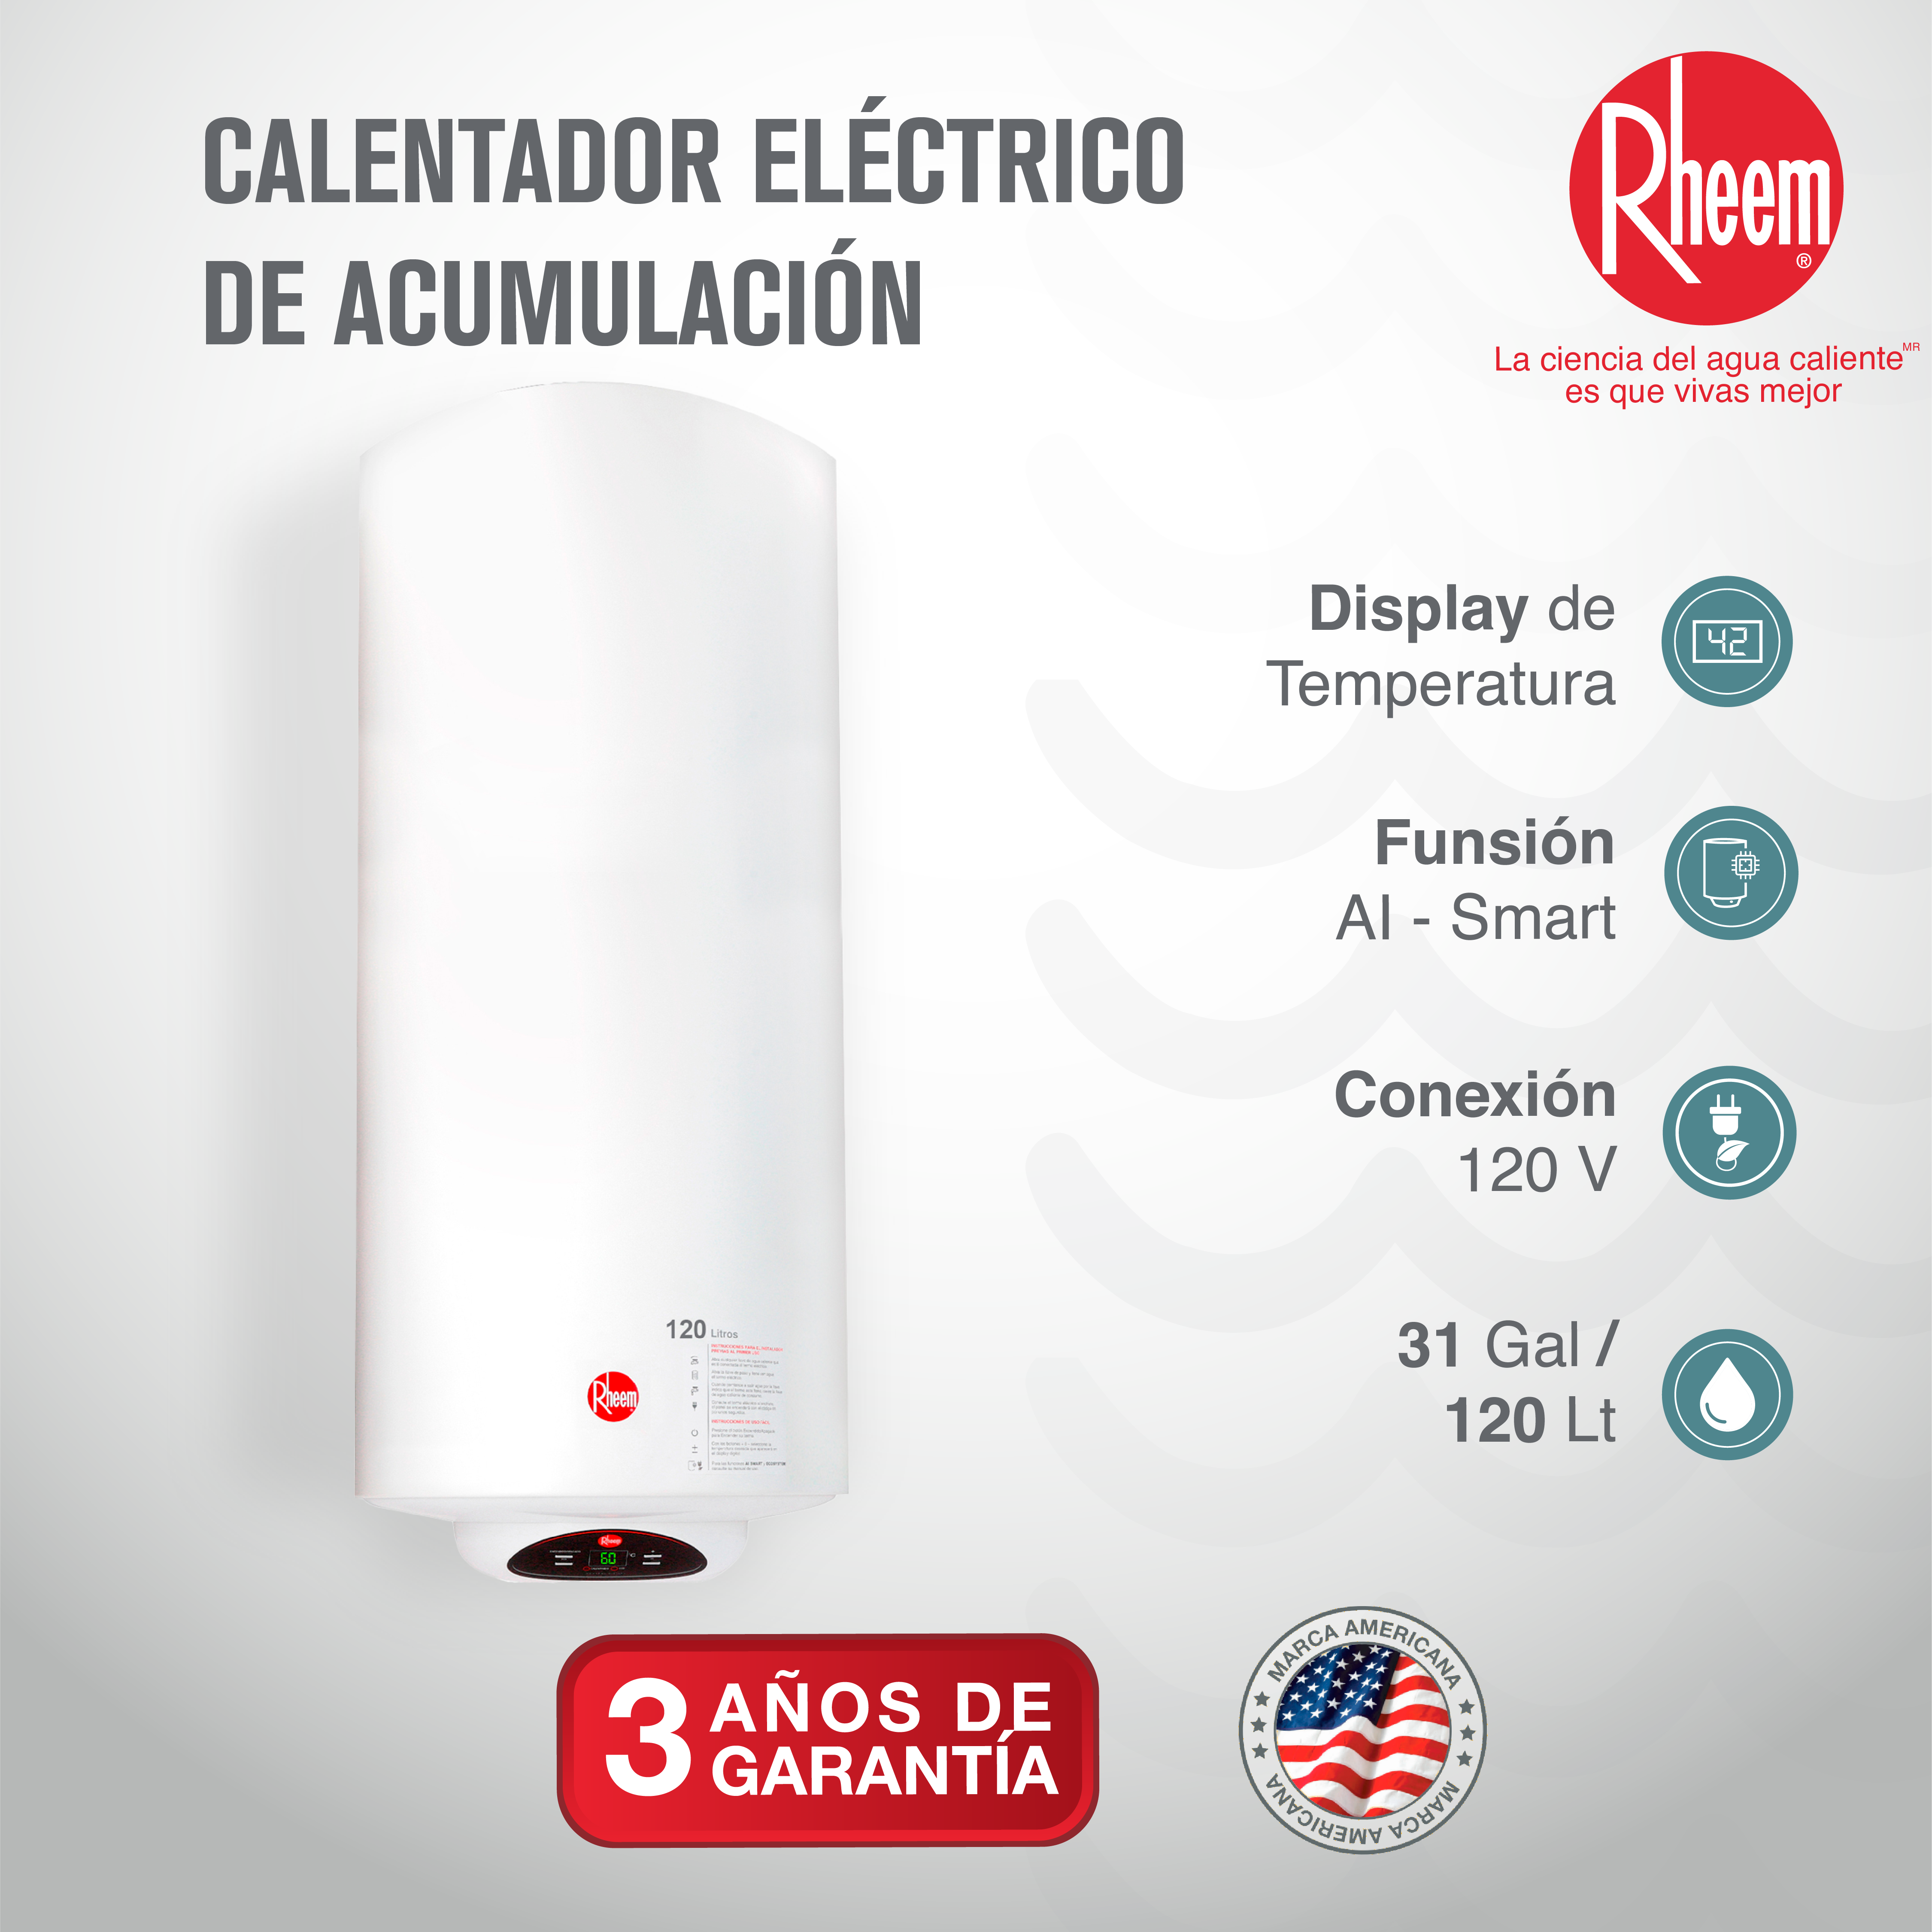 Calentador Eléctrico de acumulación 120 Litros - Rheem Colombia